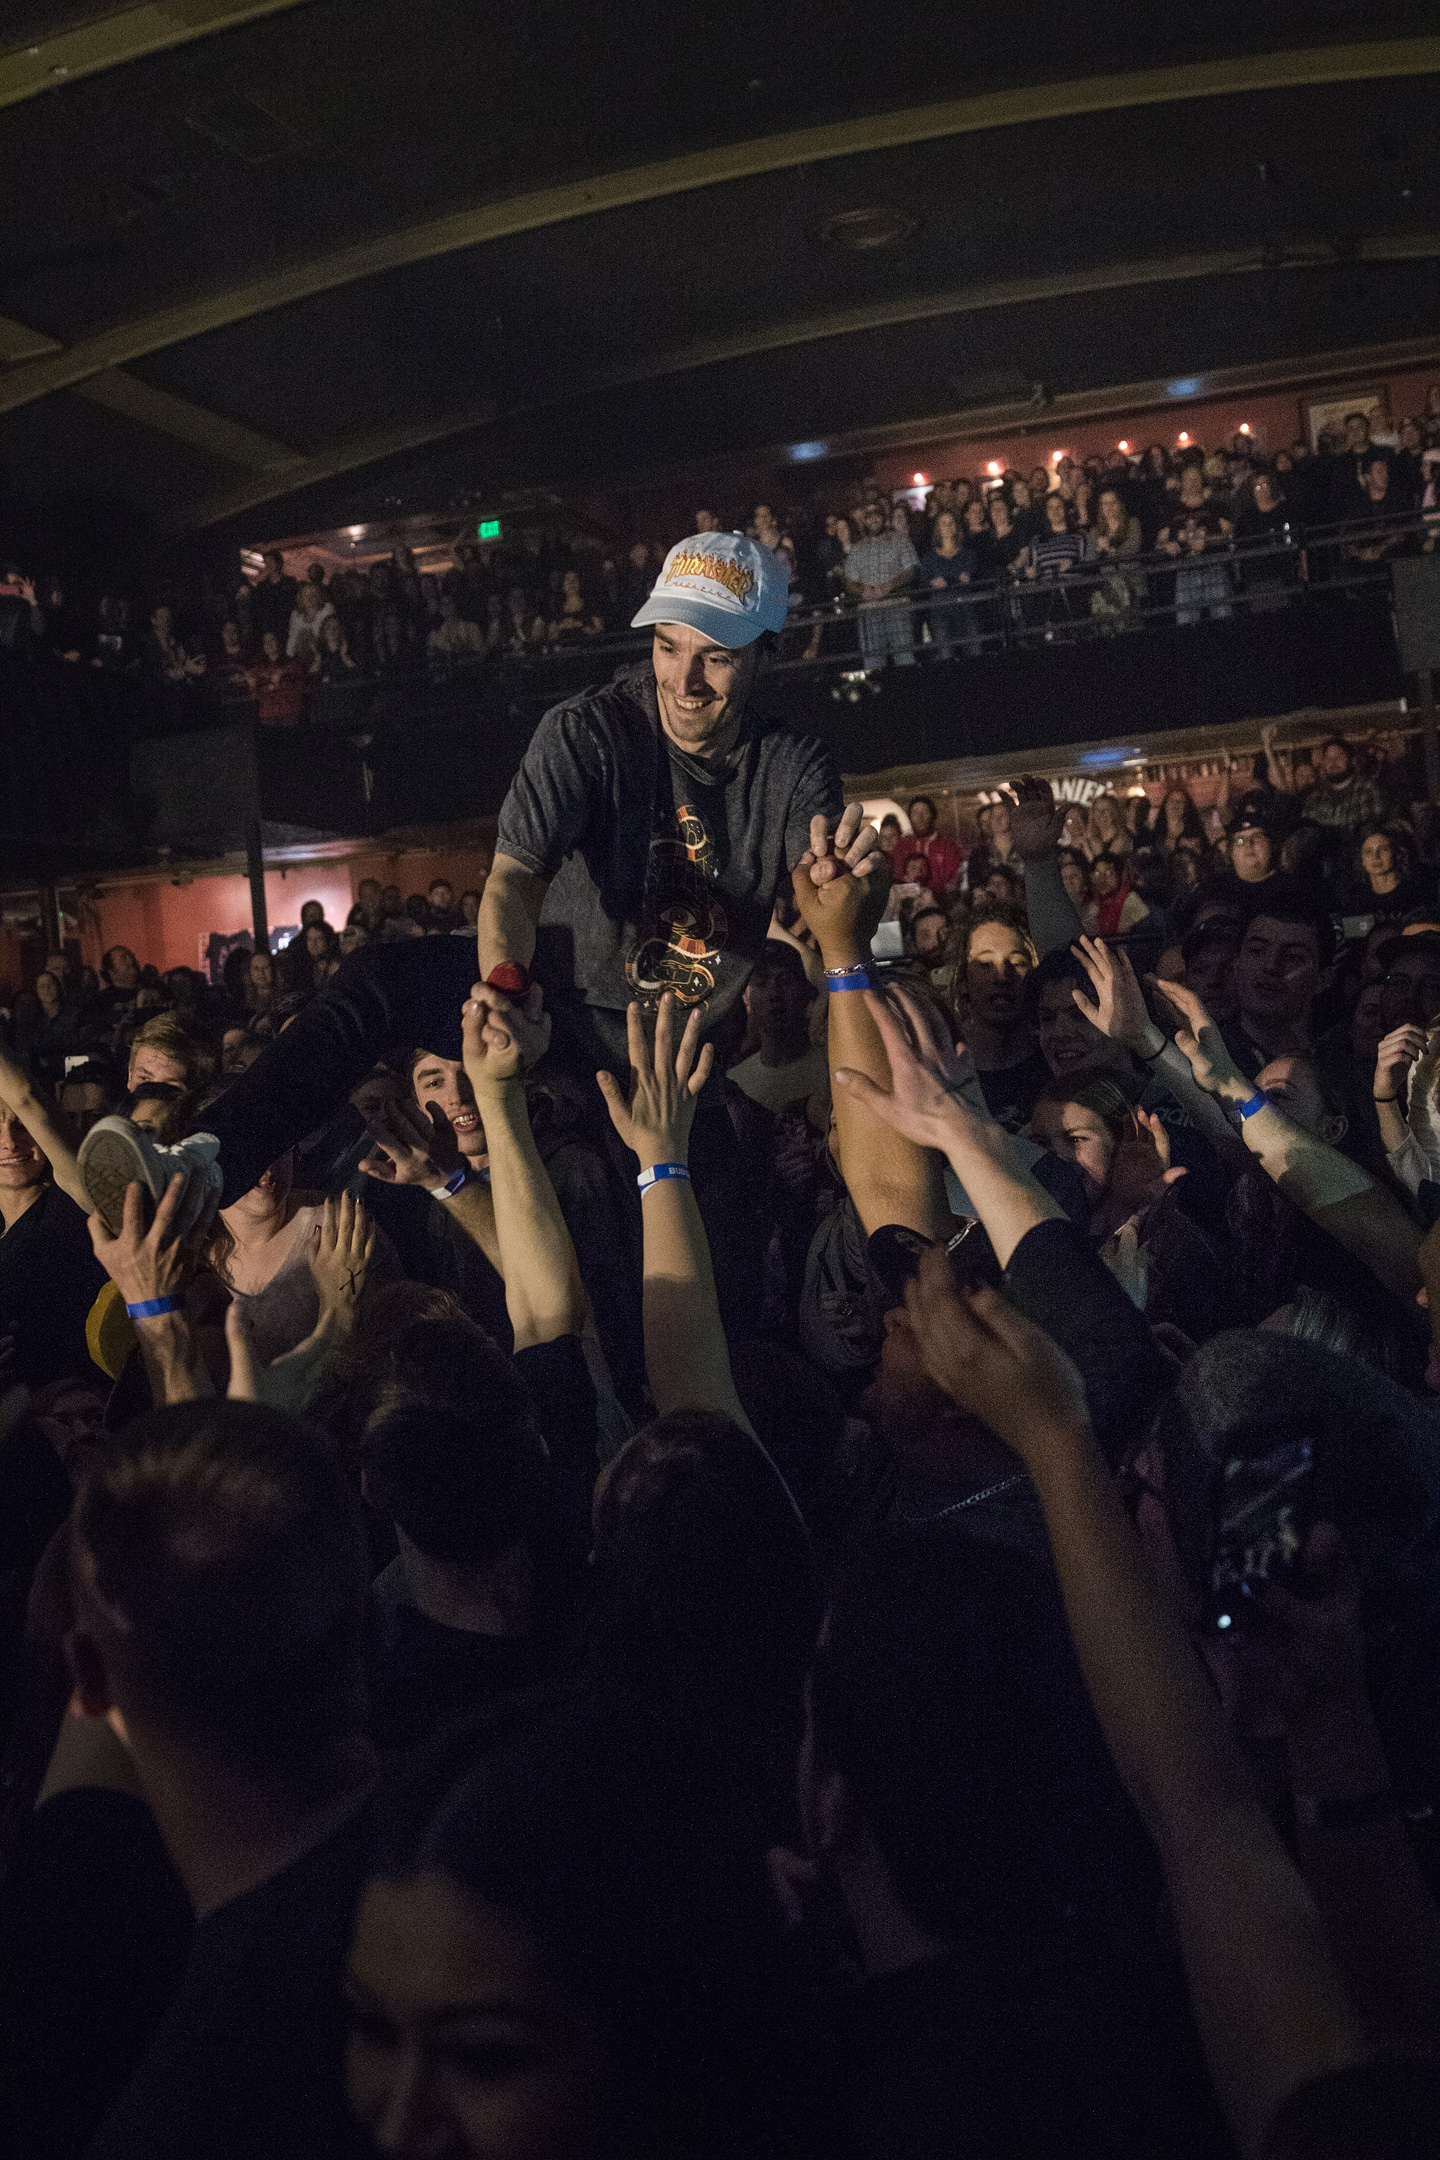 New Politics, Dreamers & The Wrecks - Concert Photos Denver